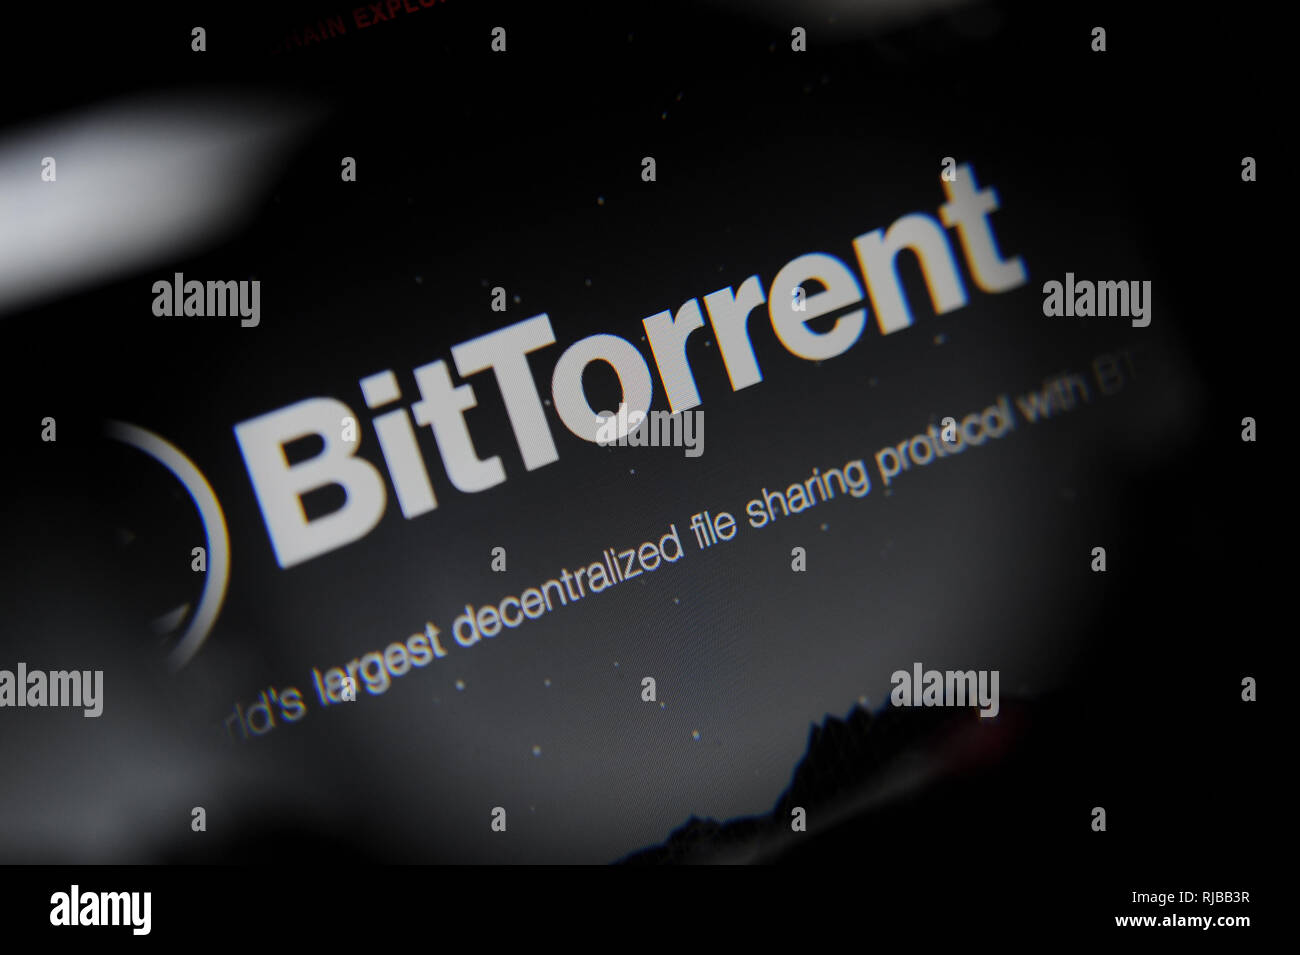 BitTorrent sito cryptocurrency visto sullo schermo di un computer Foto Stock